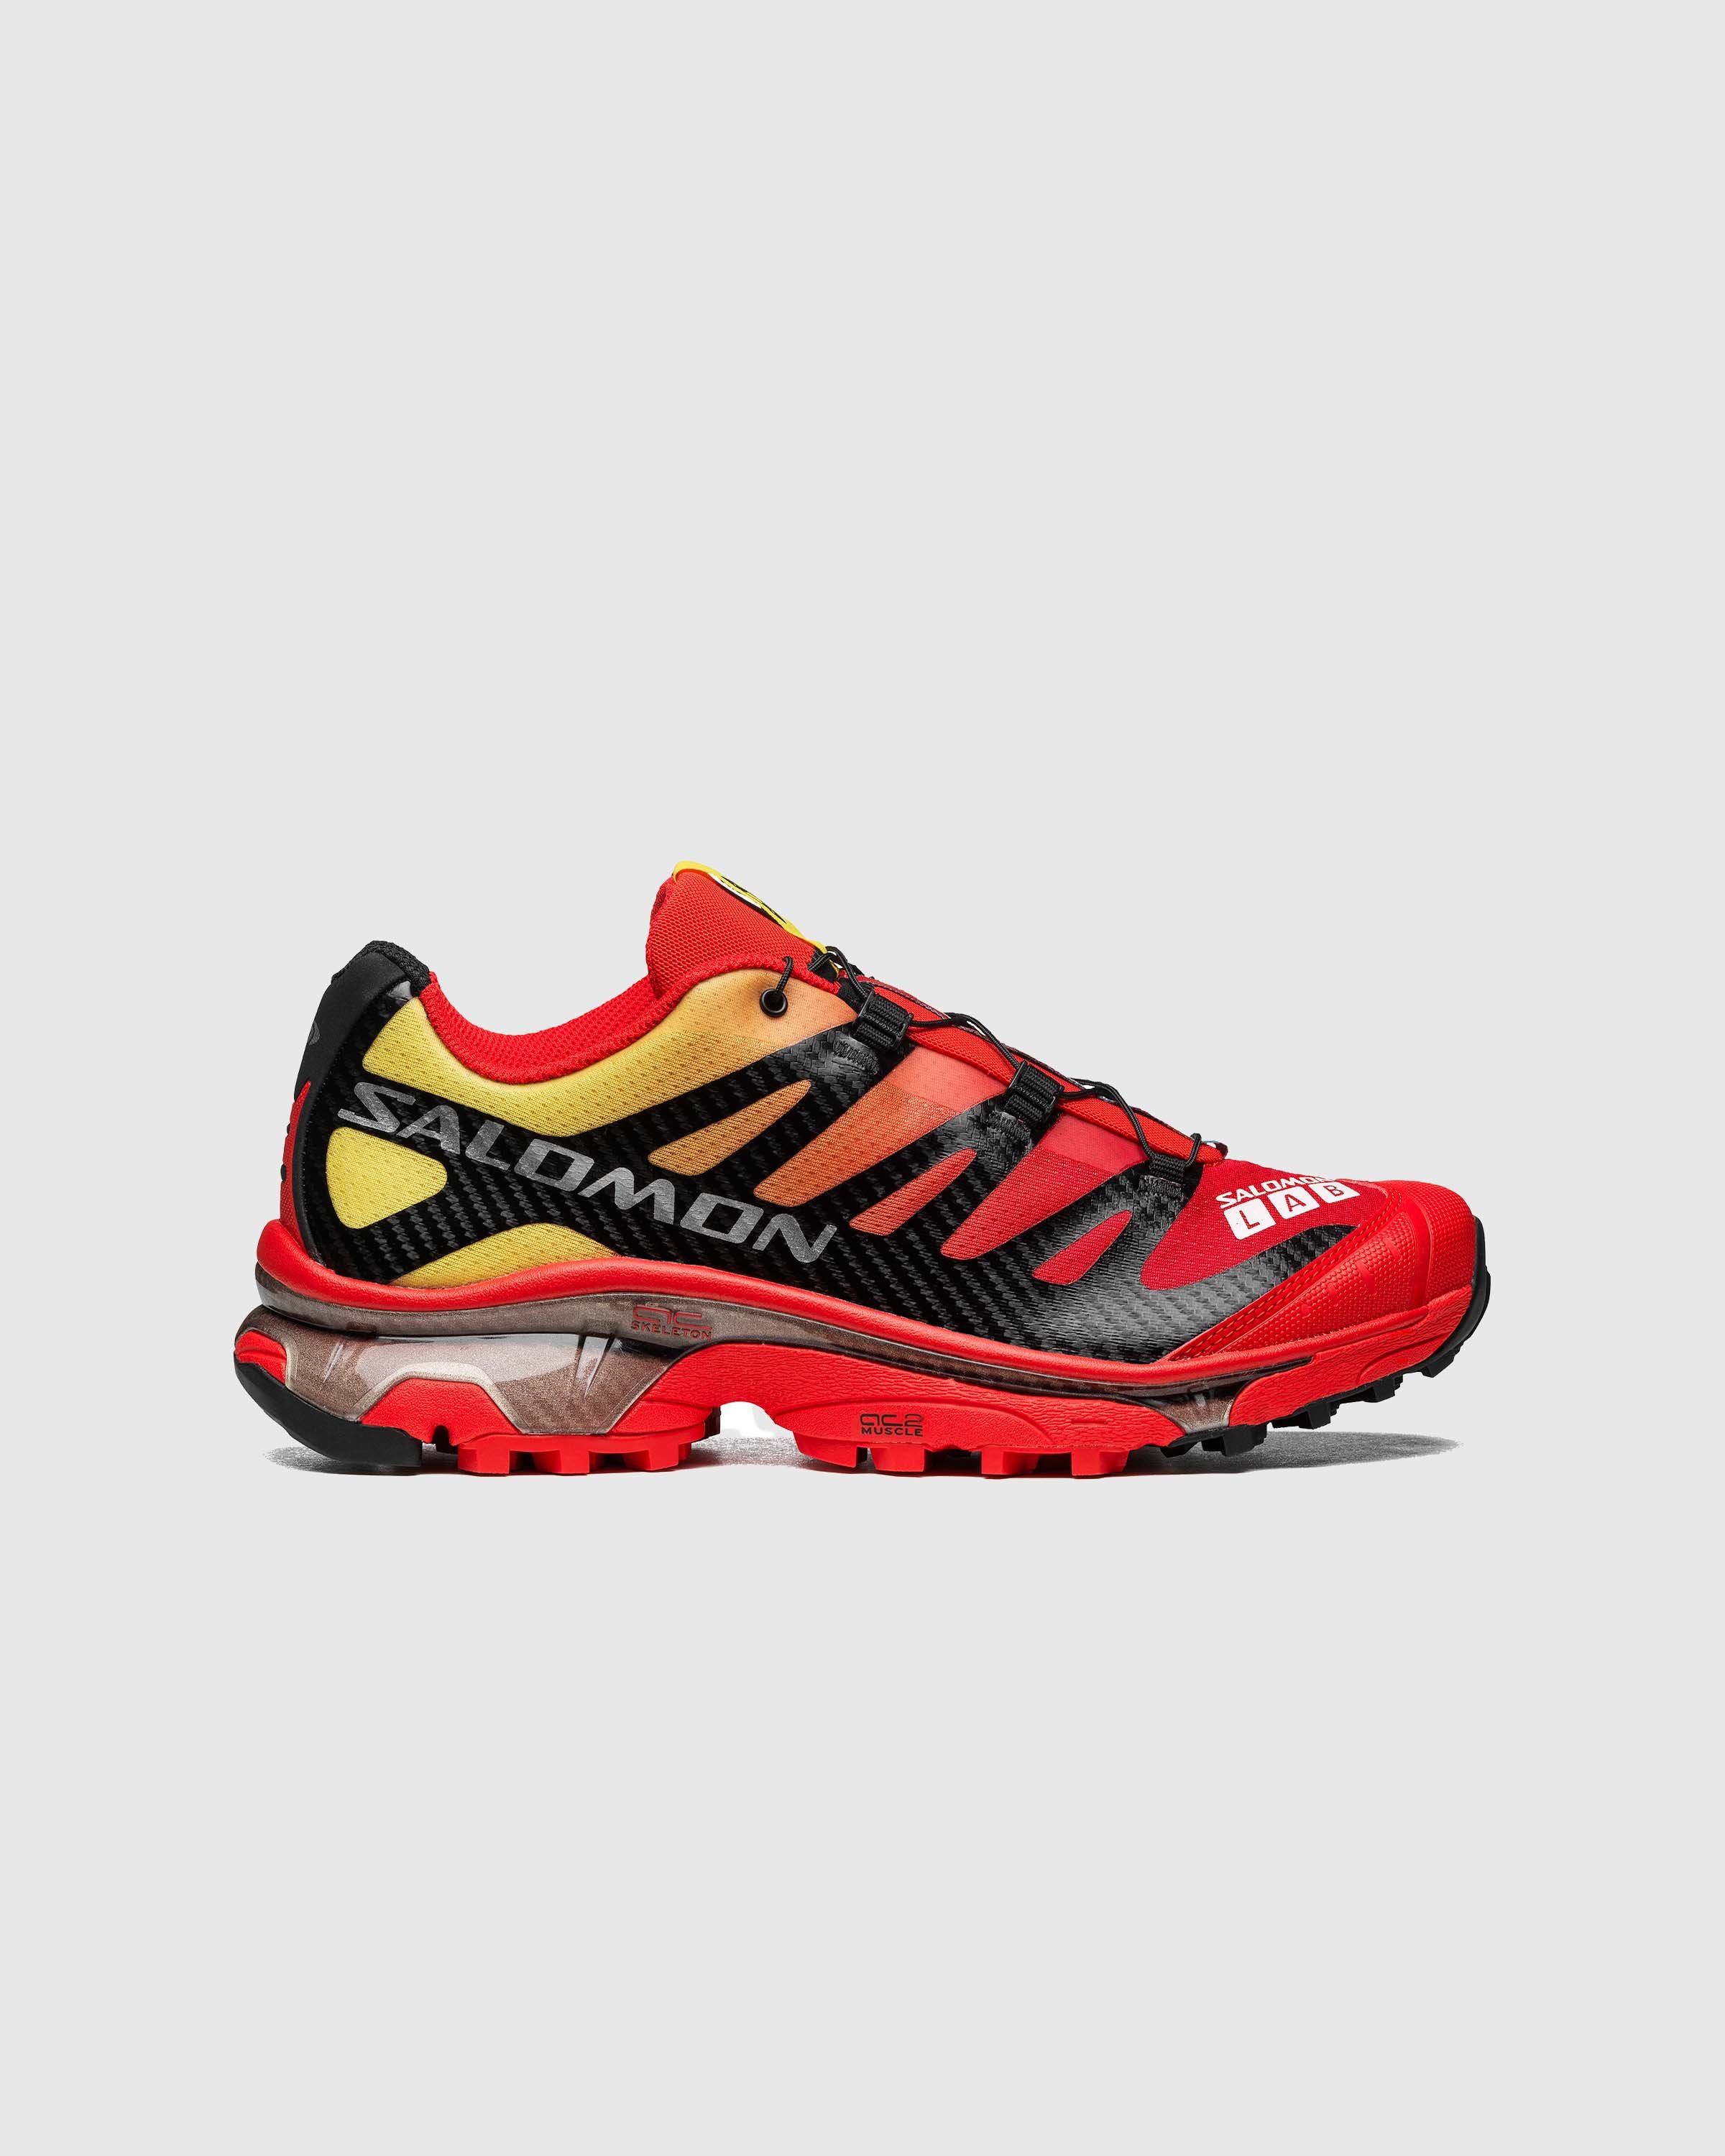 Salomon - XT-4 OG Fiery Red/Black/Yellow - Footwear - Red - Image 1